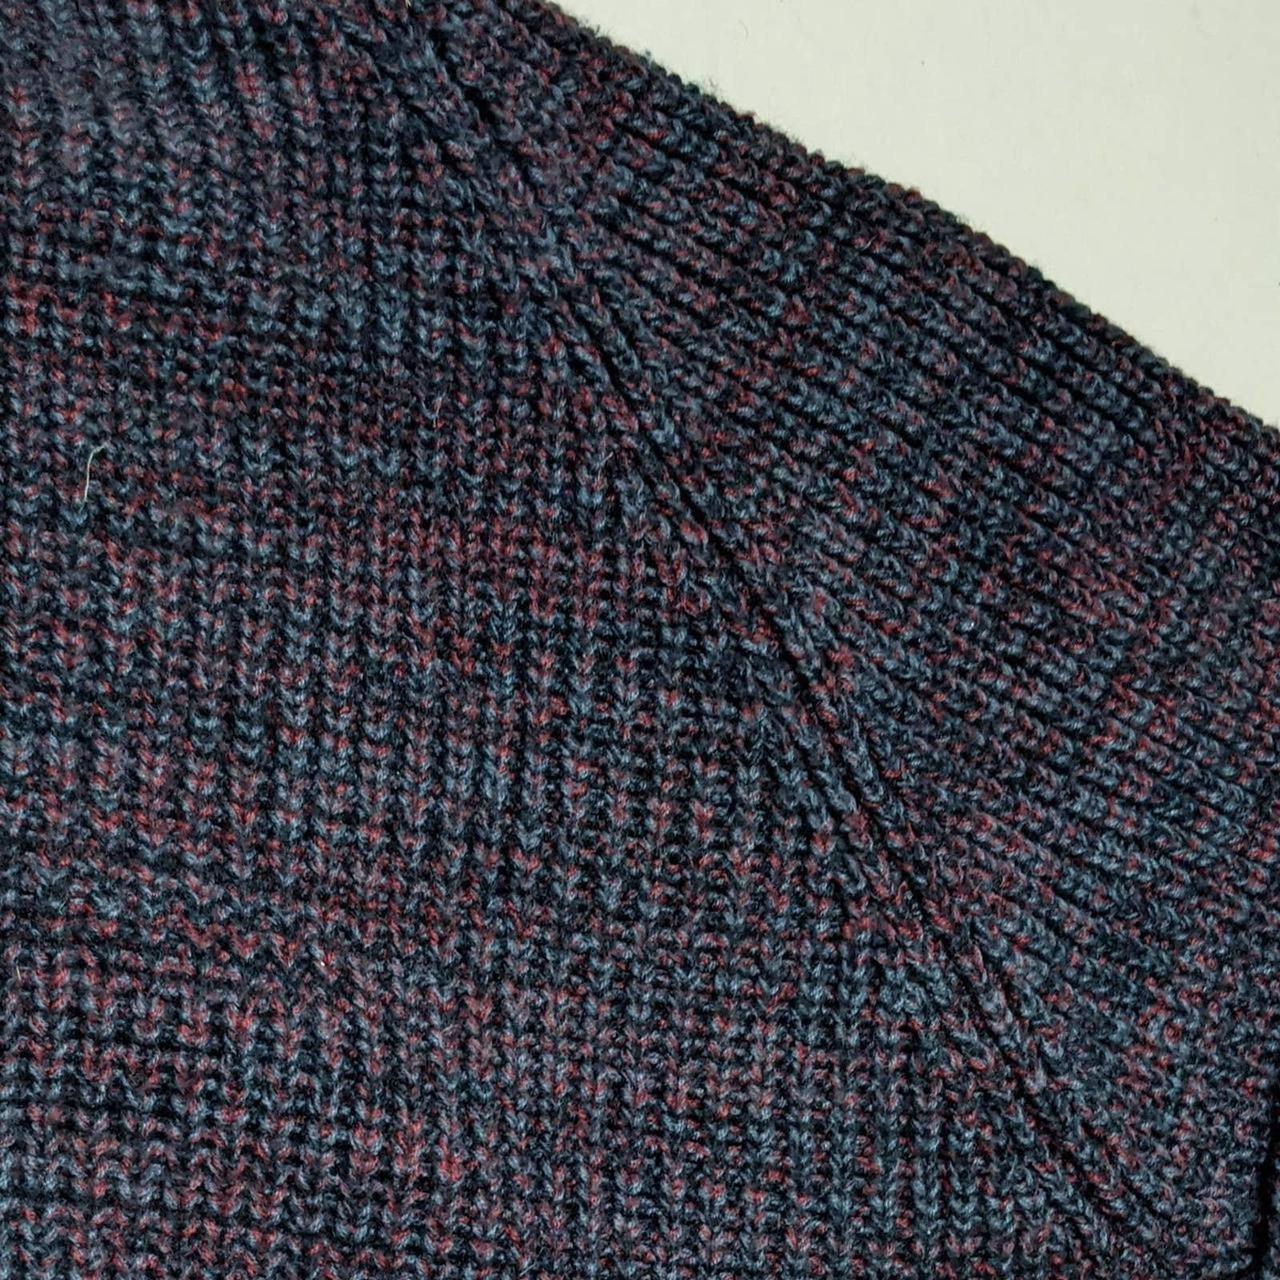 vintage 90s santana knit grandpa sweater size - Depop